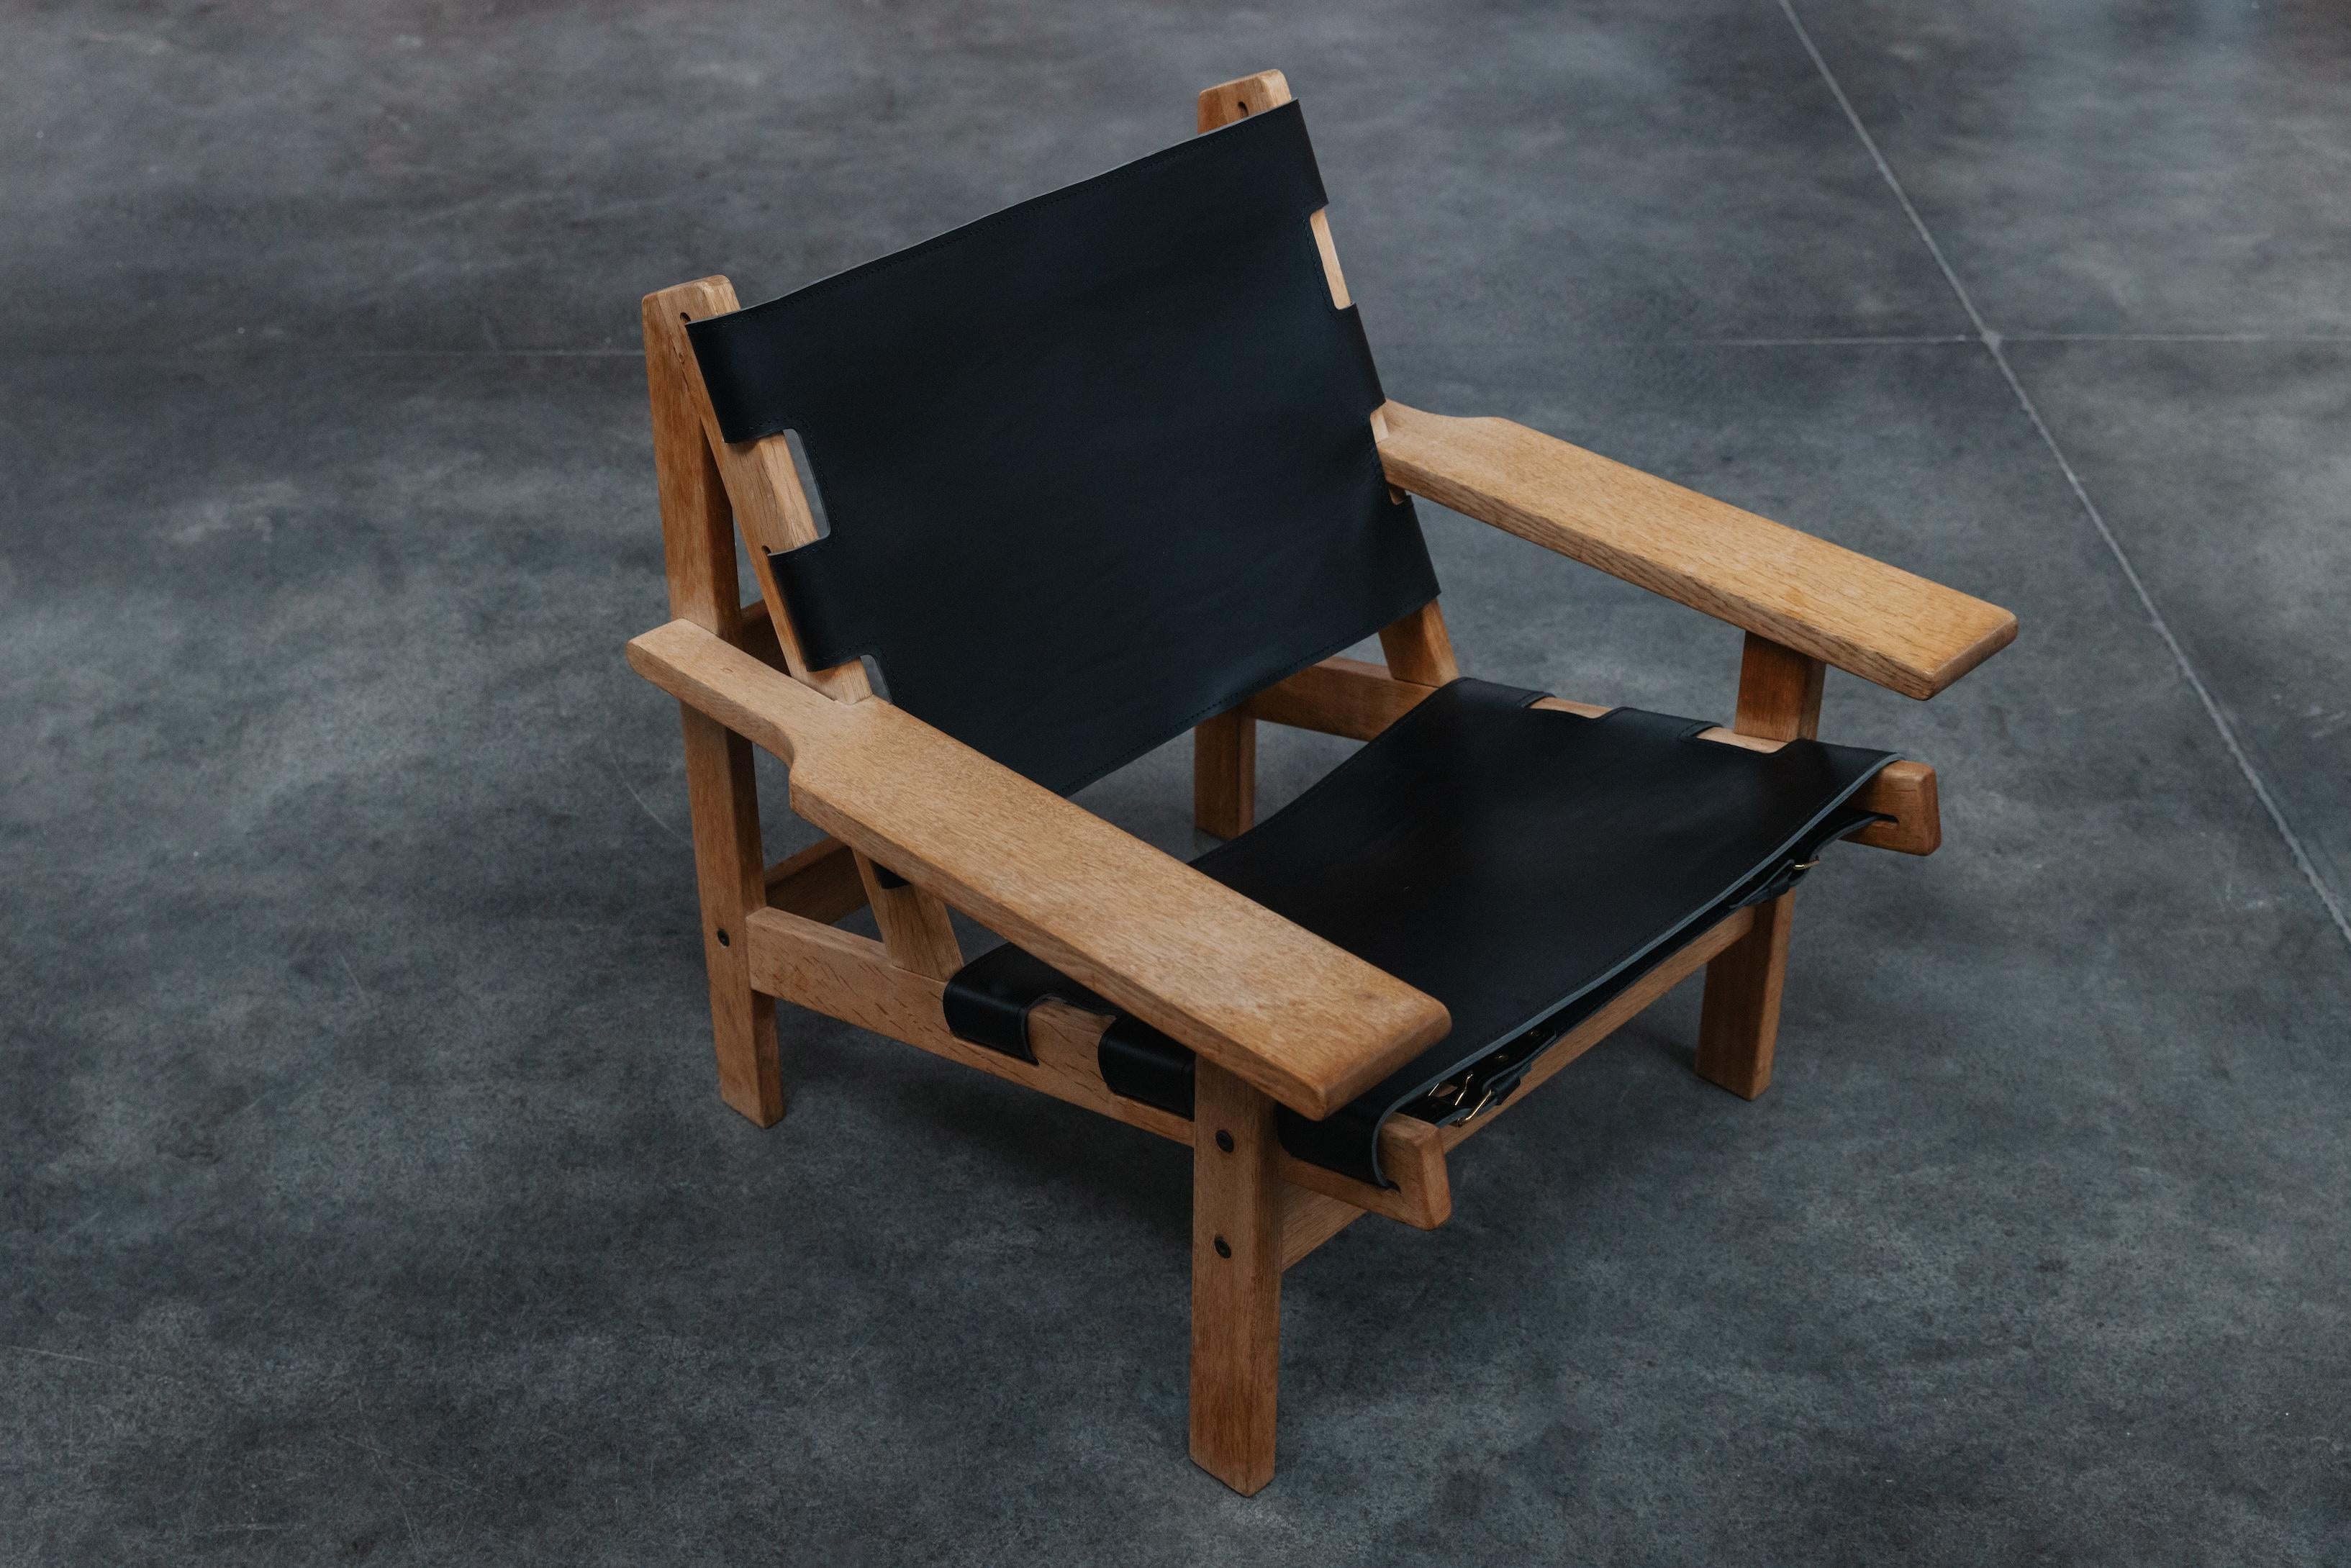 Vintage Kurt Ostervig Lounge Chairs aus Dänemark, CIRCA 1960.  Massive Eichenholzkonstruktion mit leichter Patina und Gebrauchsspuren.  Spätere Lederpolsterung.